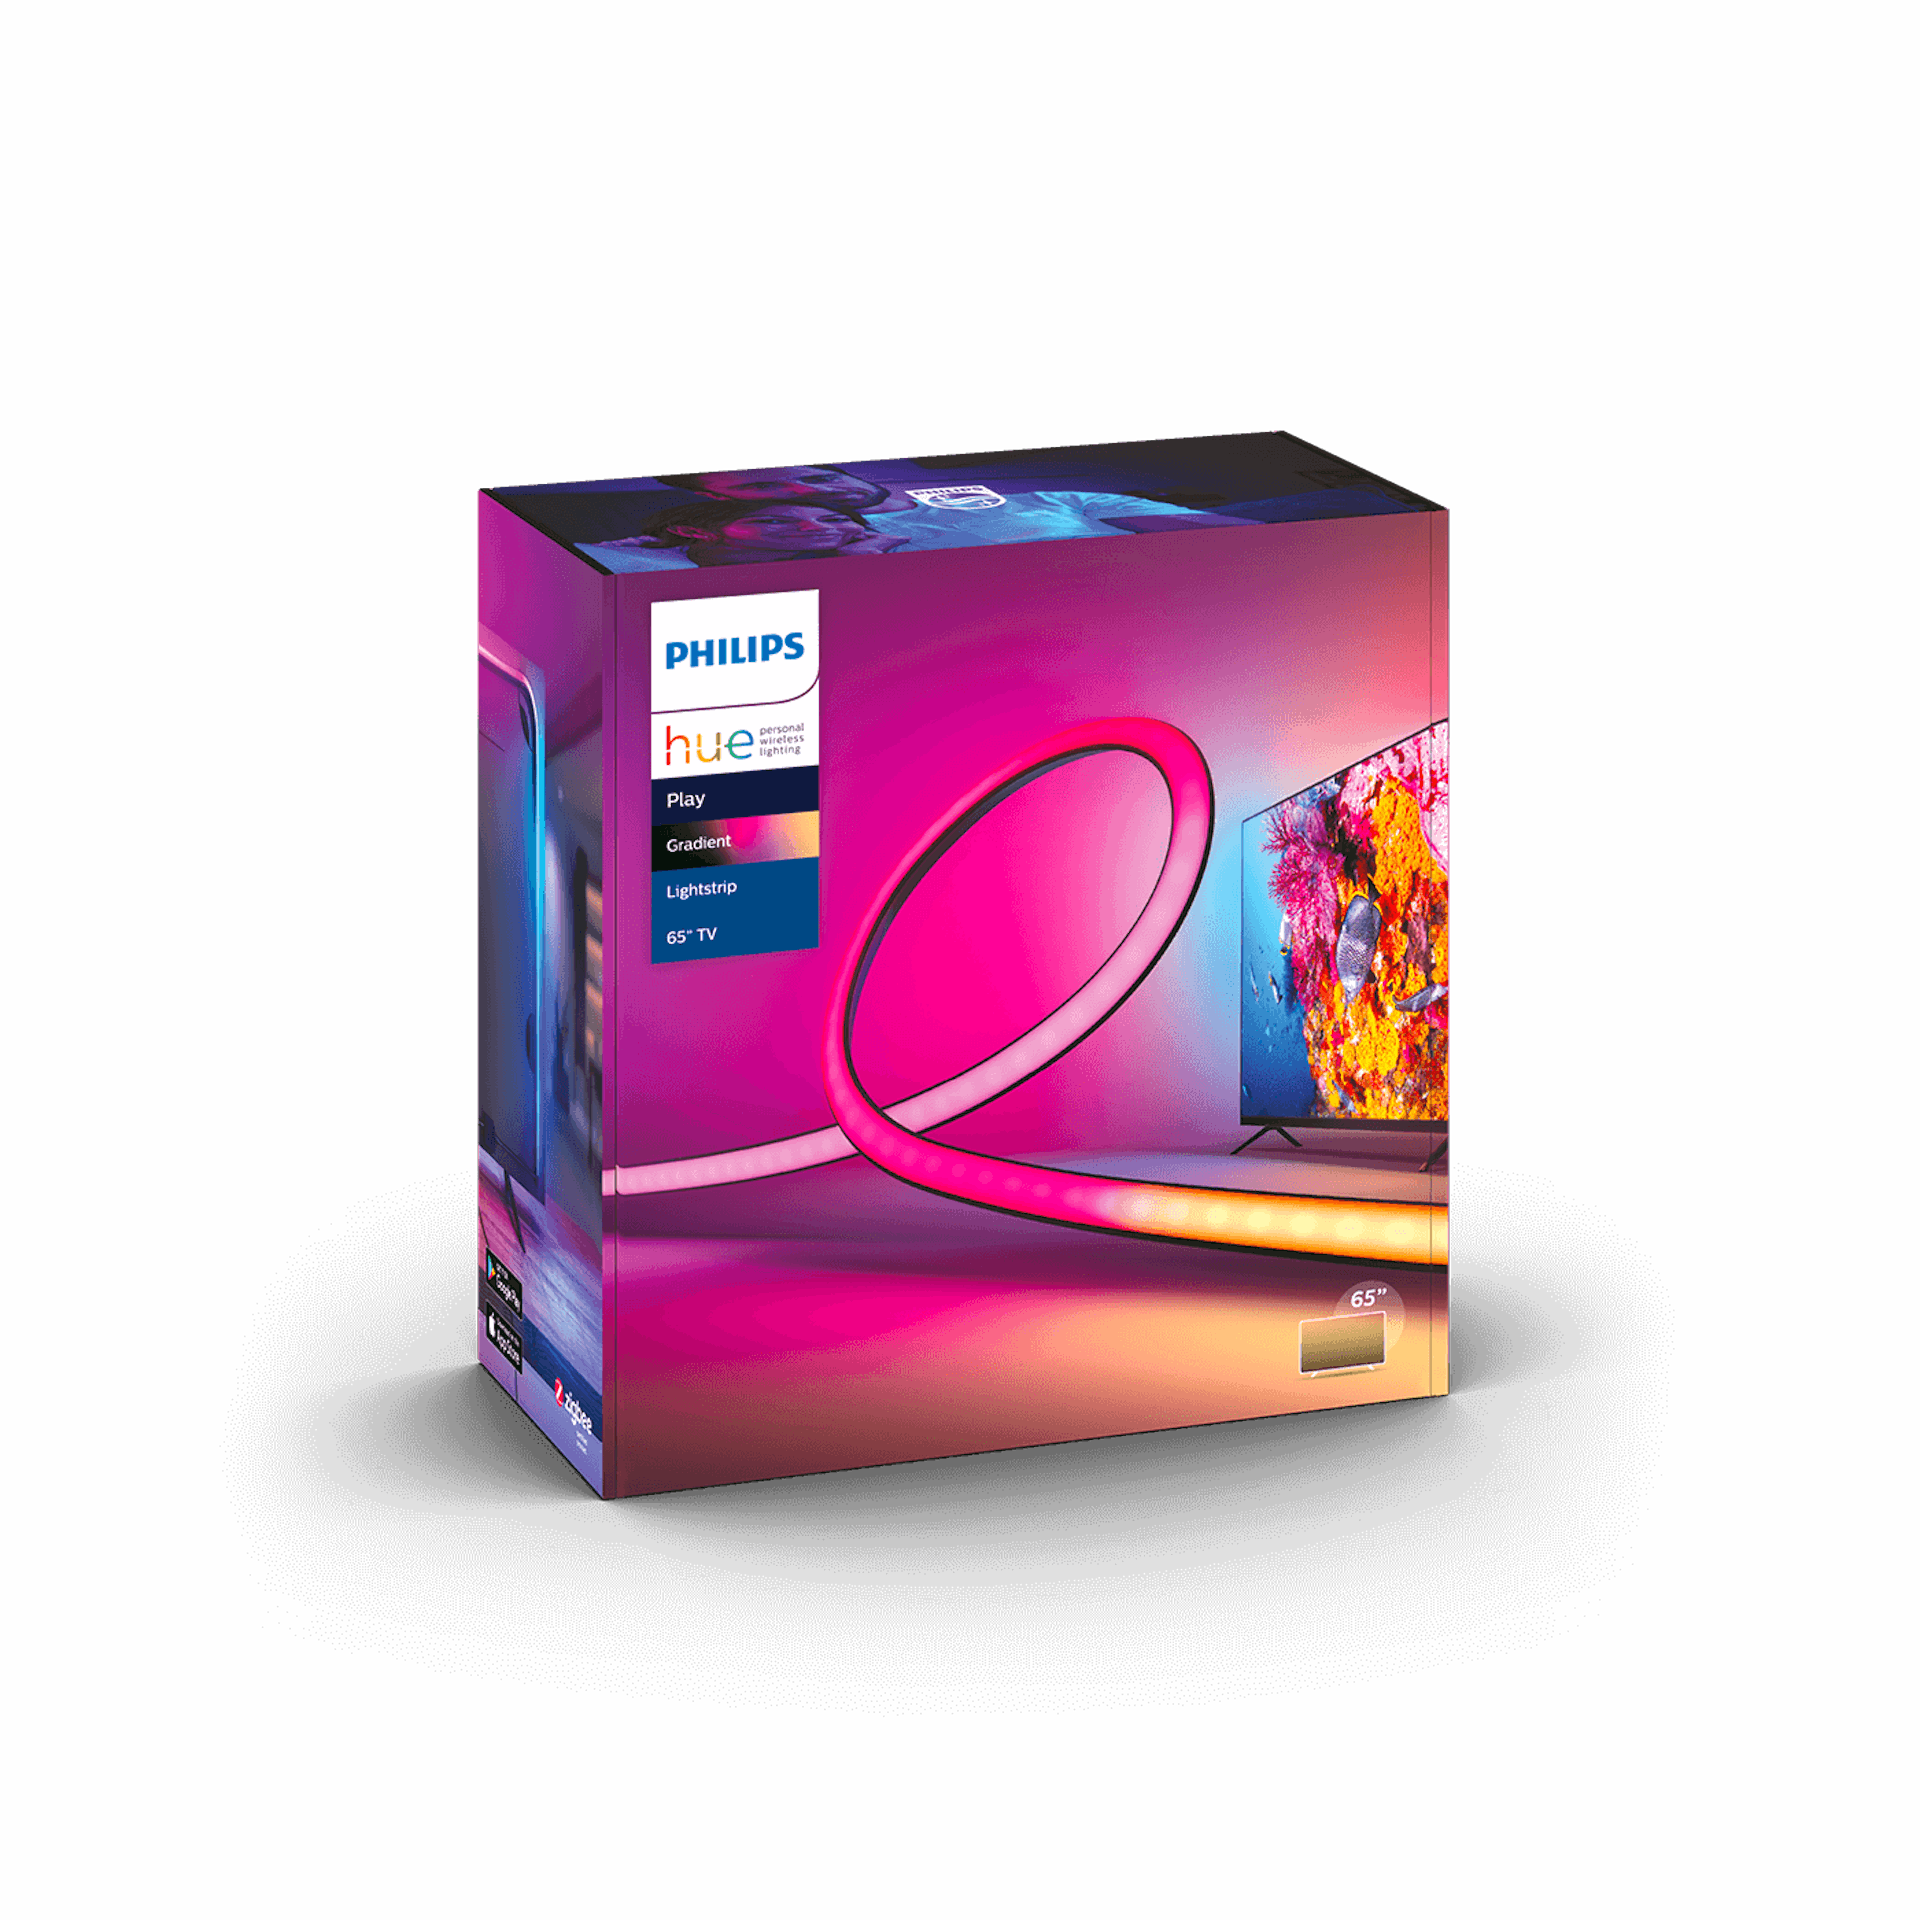 Philips Hue Play Gradient Lightstrip 65 - Packaging